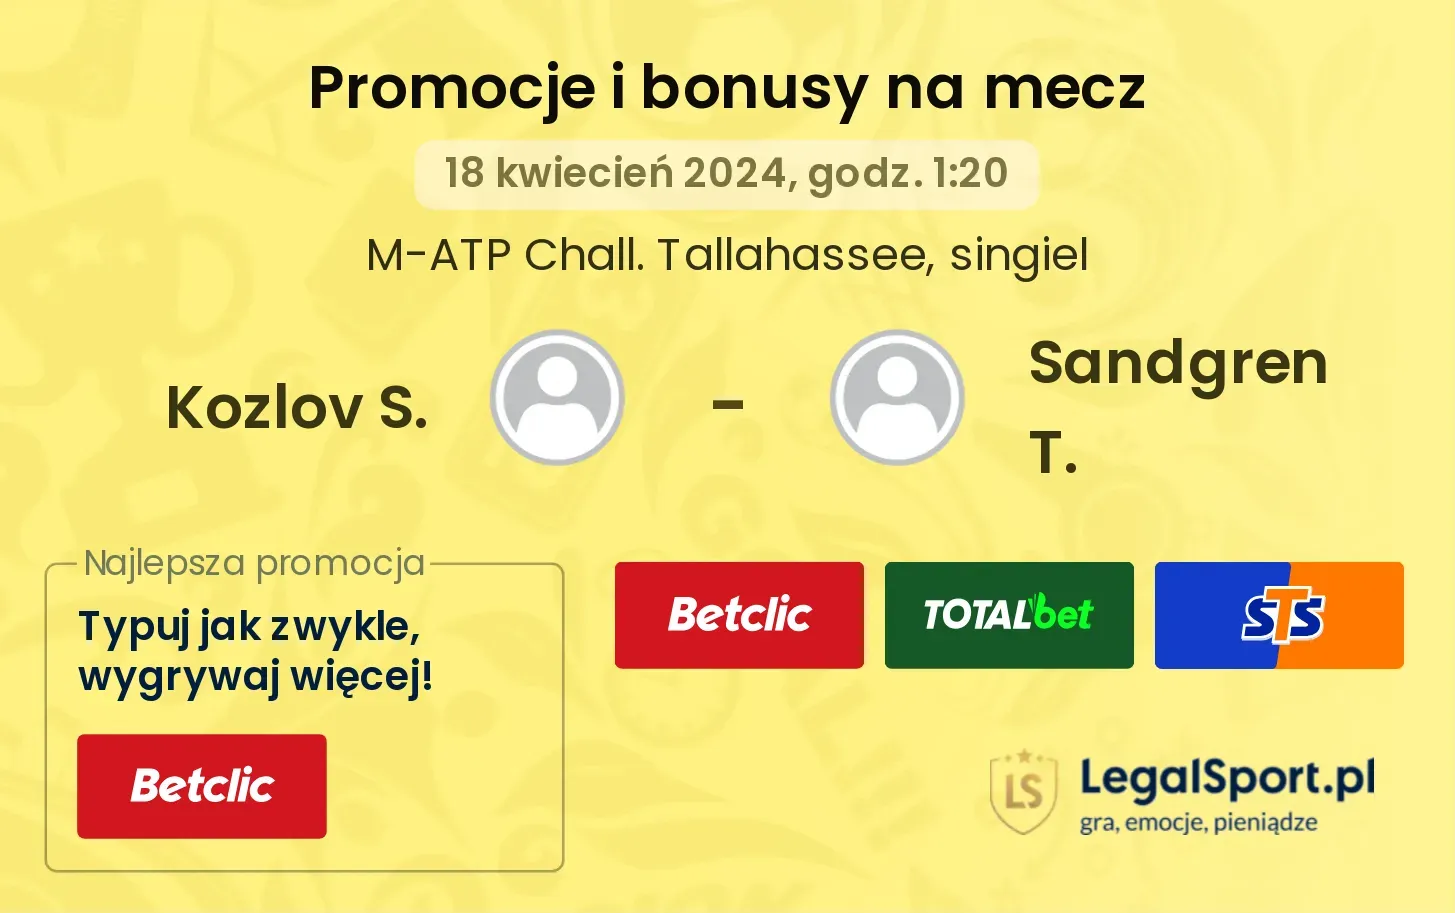 Kozlov S. - Sandgren T. promocje bonusy na mecz